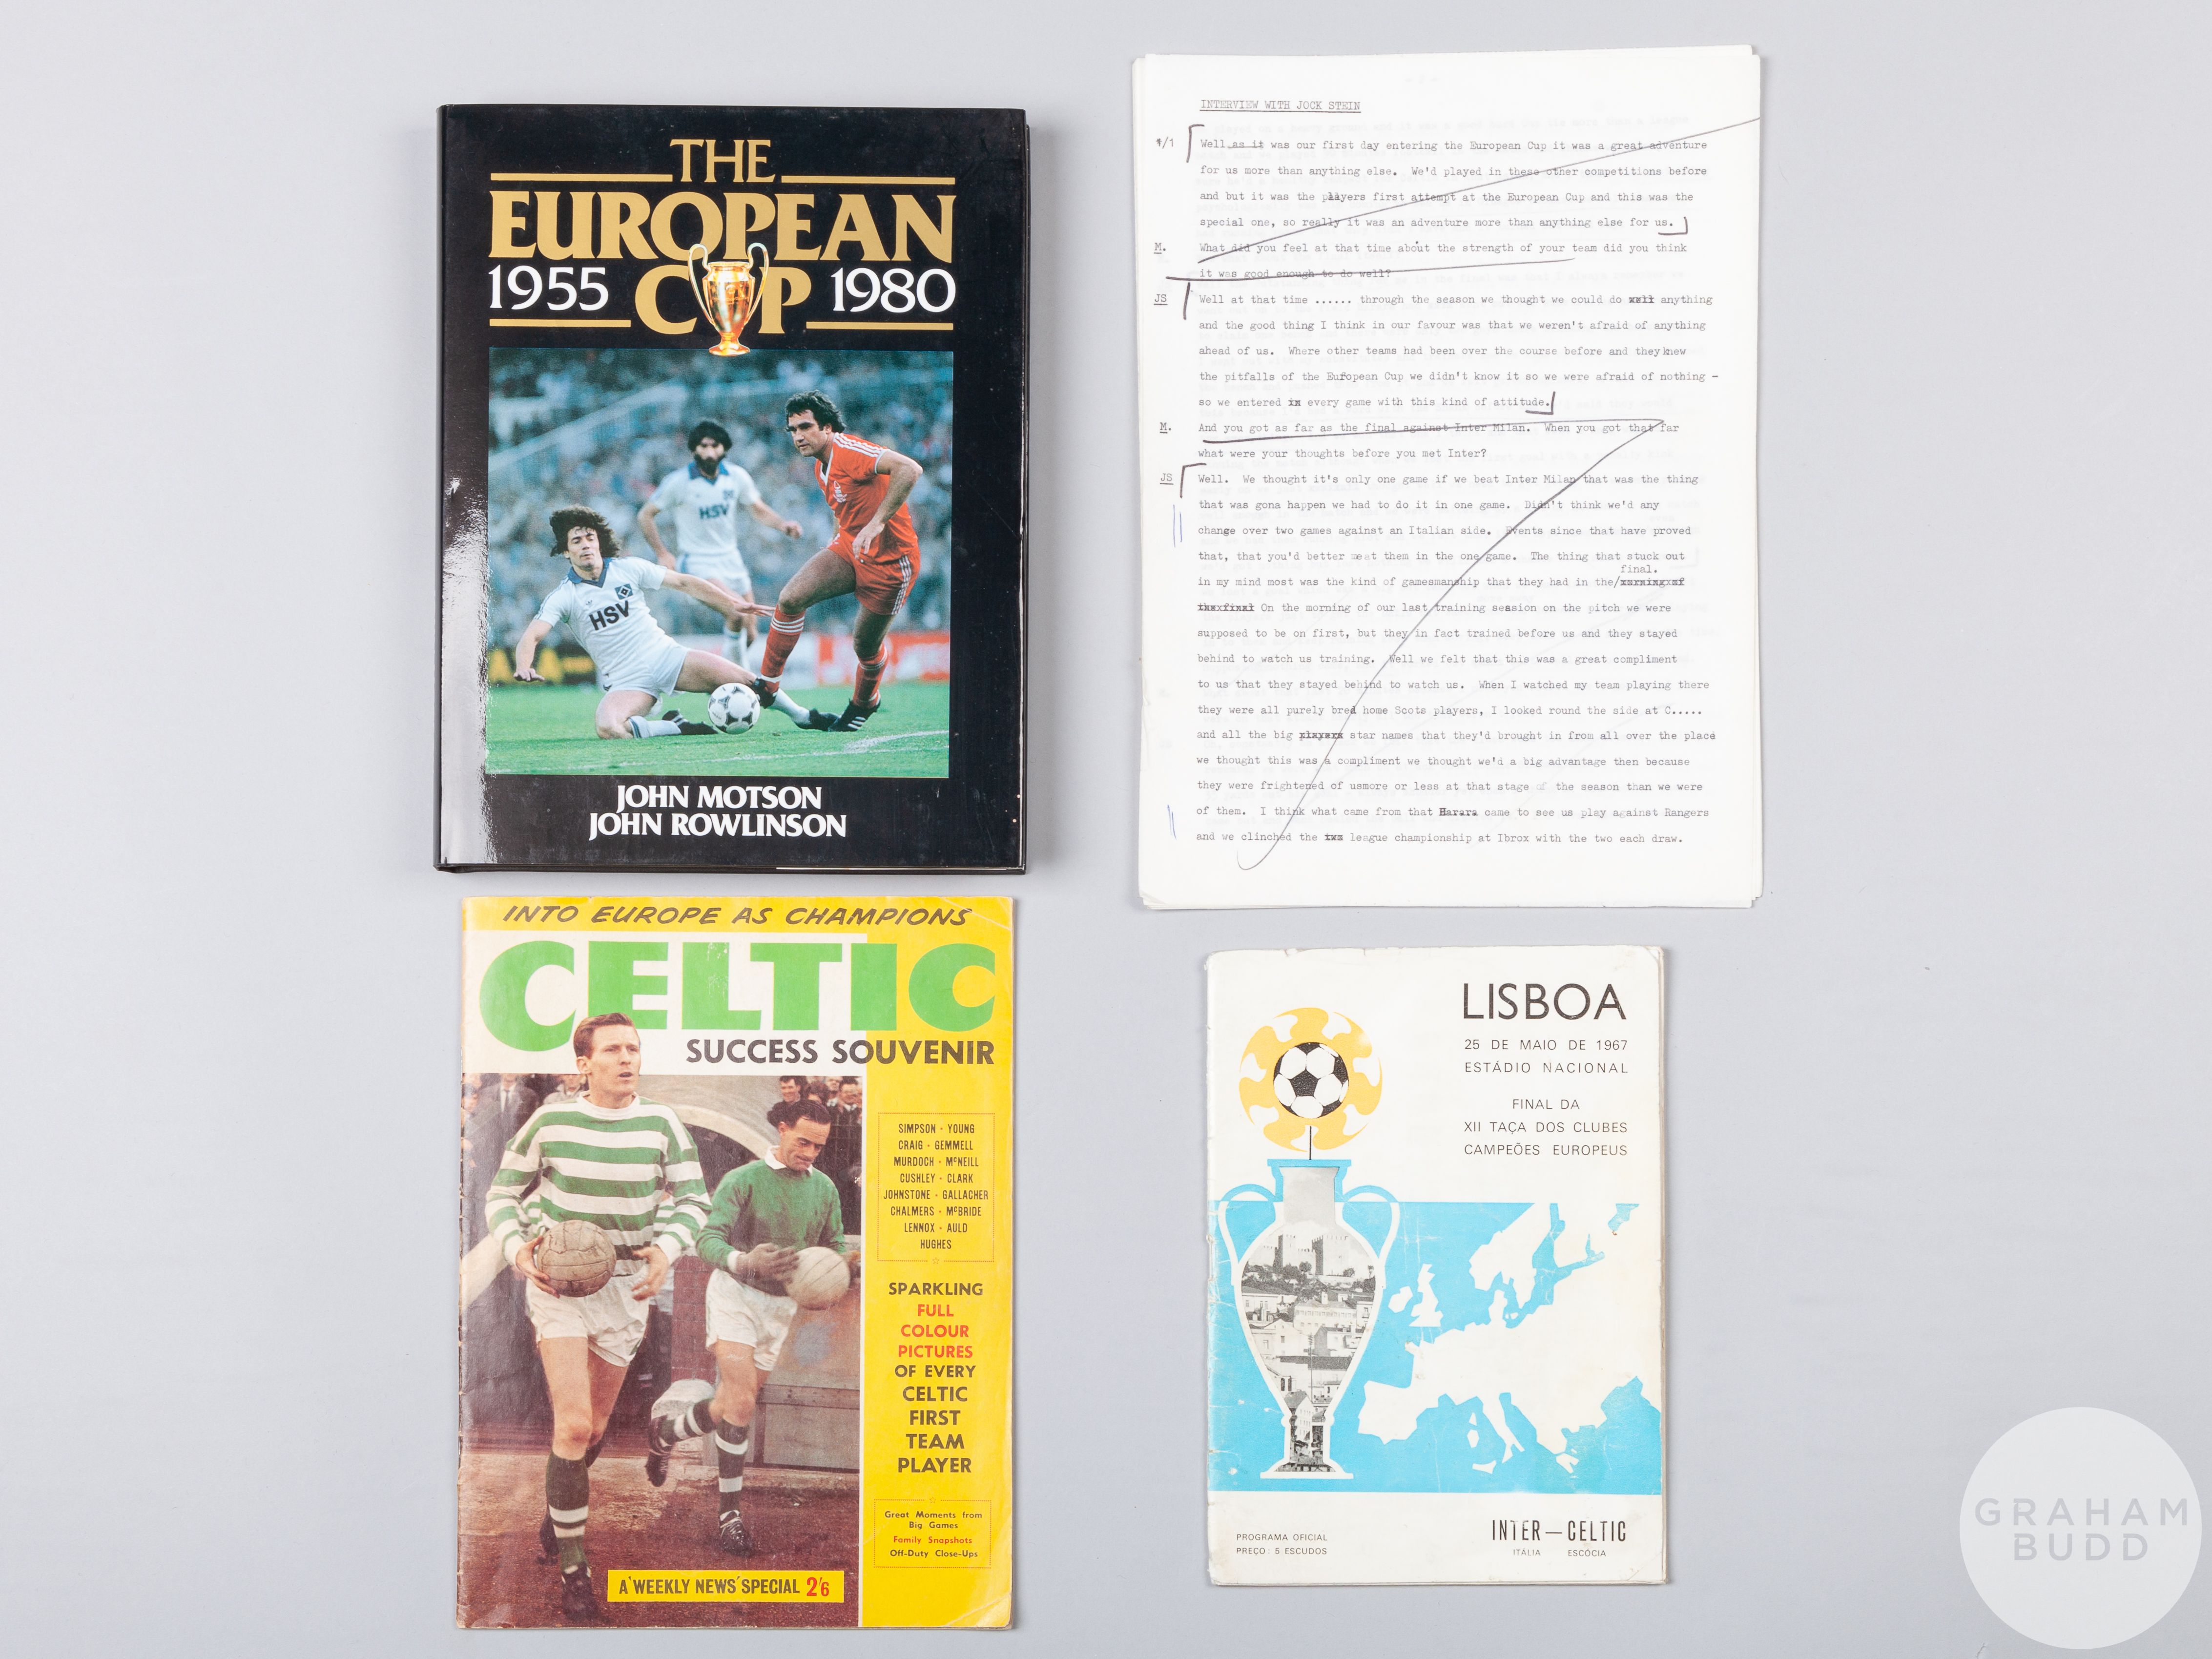 Celtic 'Lisbon Lions' 1967 European Cup memorabilia,